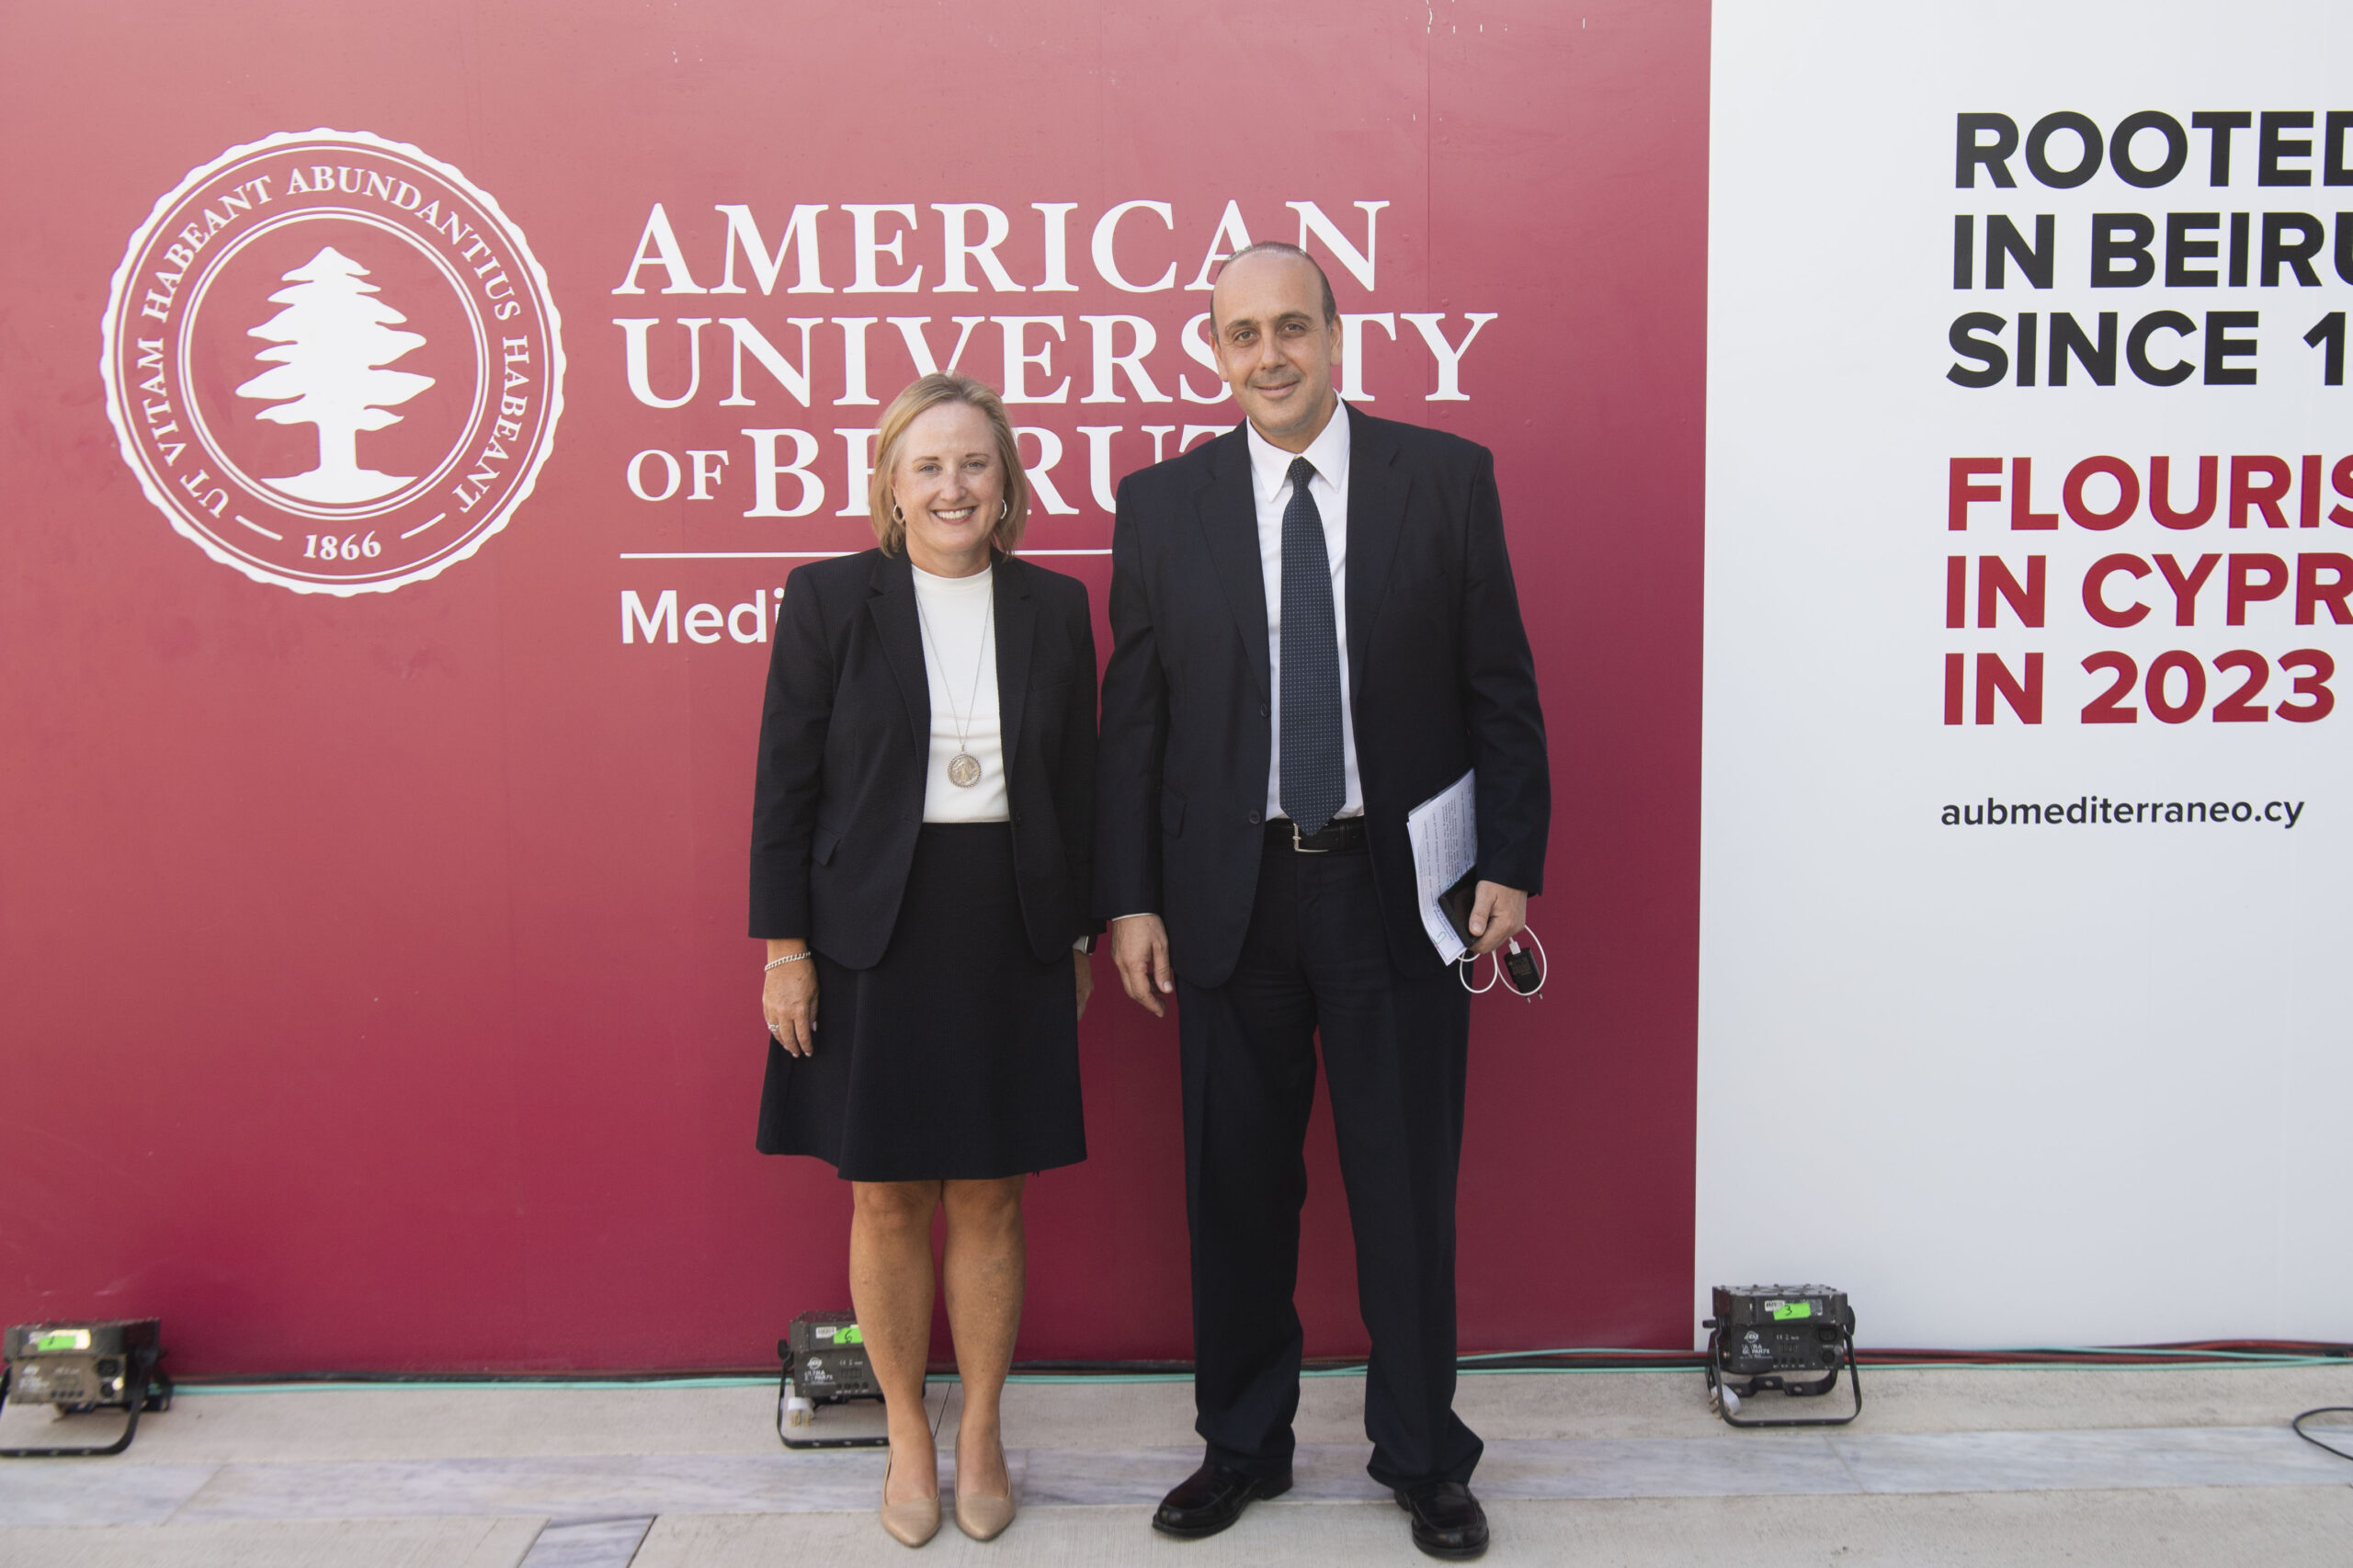 Αμερικανικό Πανεπιστήμιο Βηρυτού στην Πάφο: Λαμπερή τελετή στην έναρξη της πρώτης ακαδημαϊκής χρονιάς (ΦΩΤΟ)